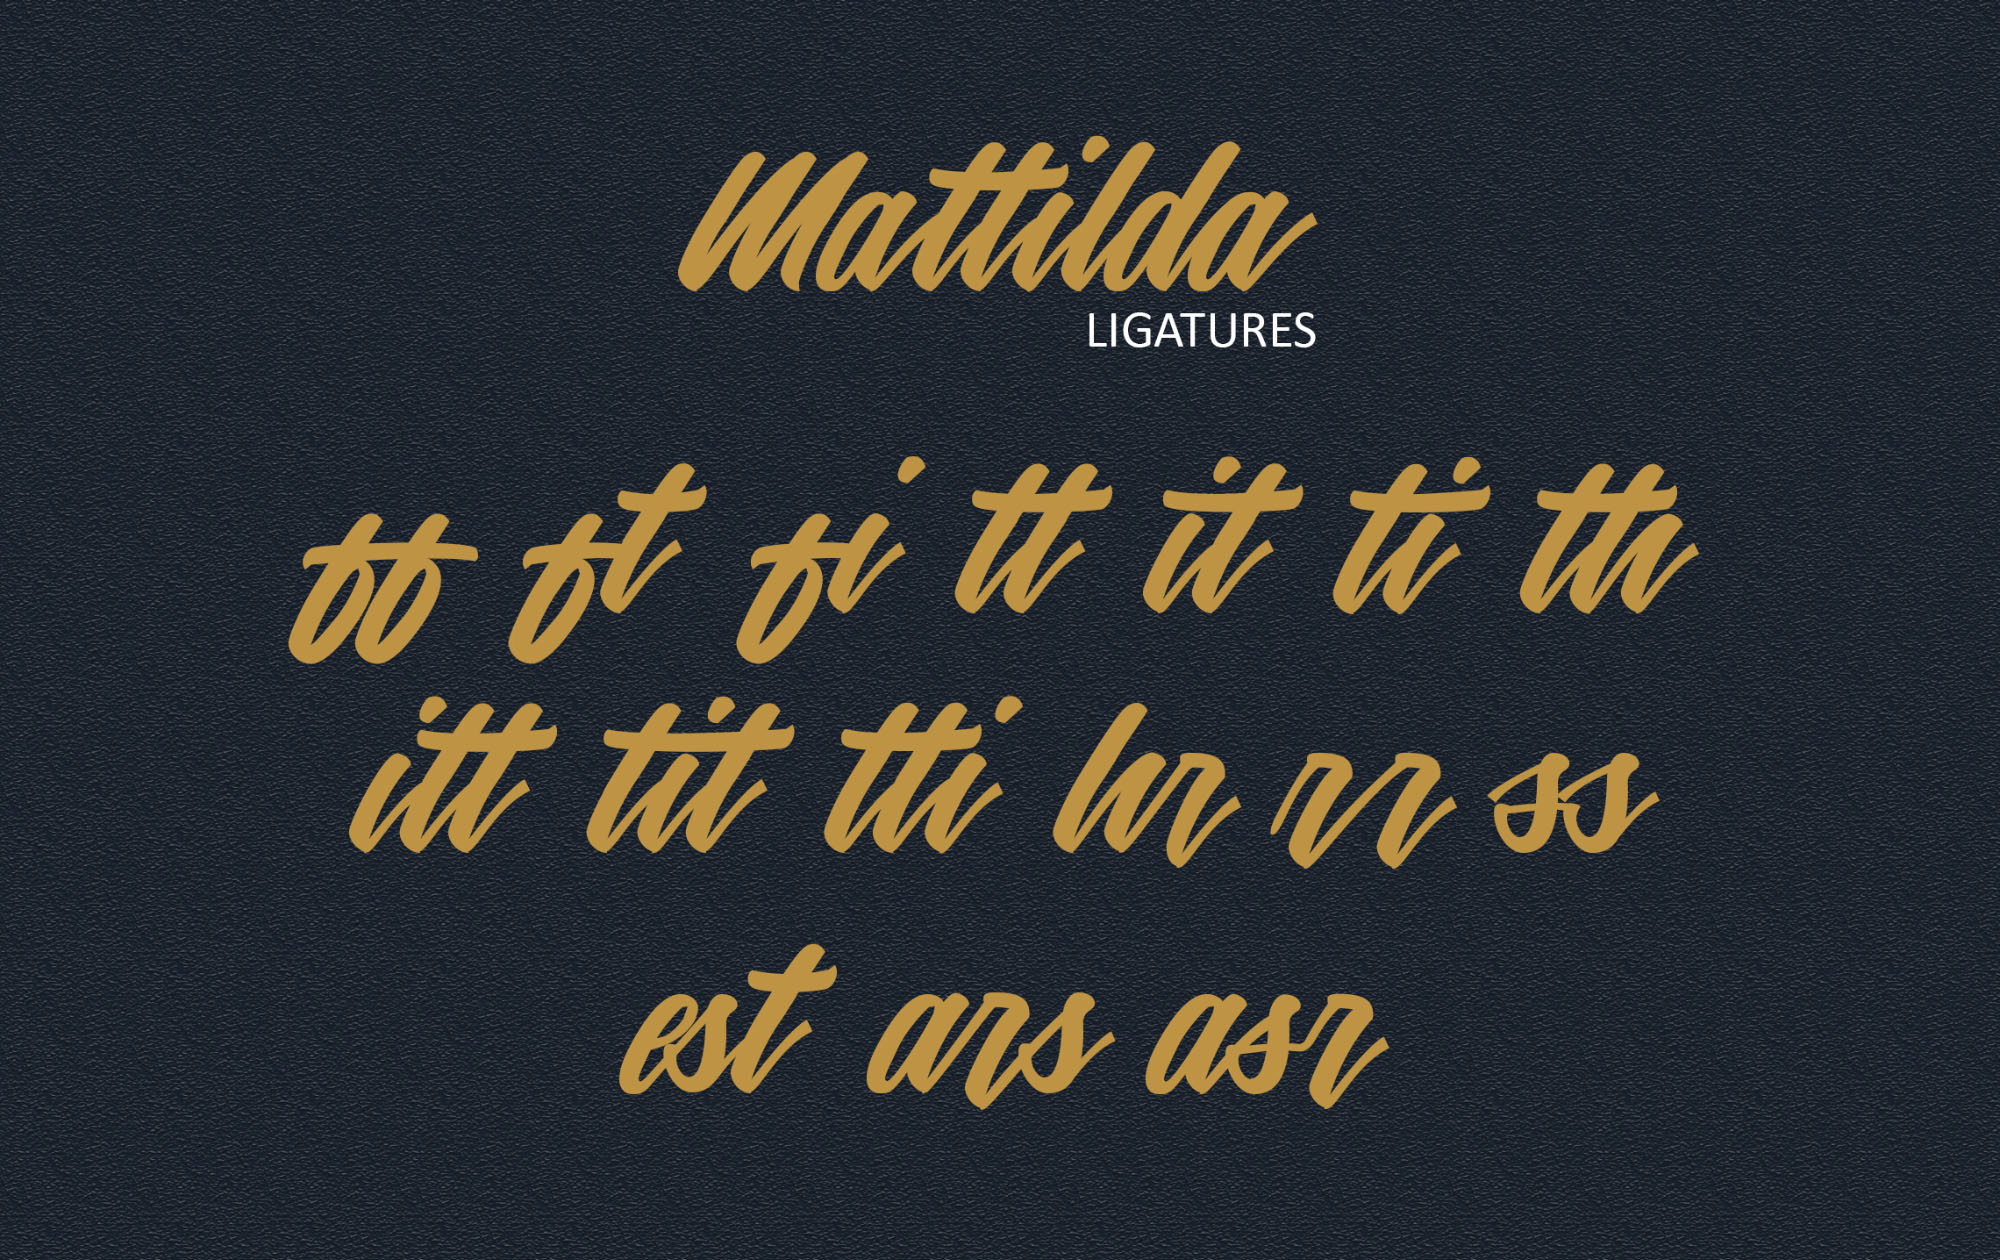 英文画笔连笔艺术字体蚂蚁素材精选 Mattilda Script Font插图(3)